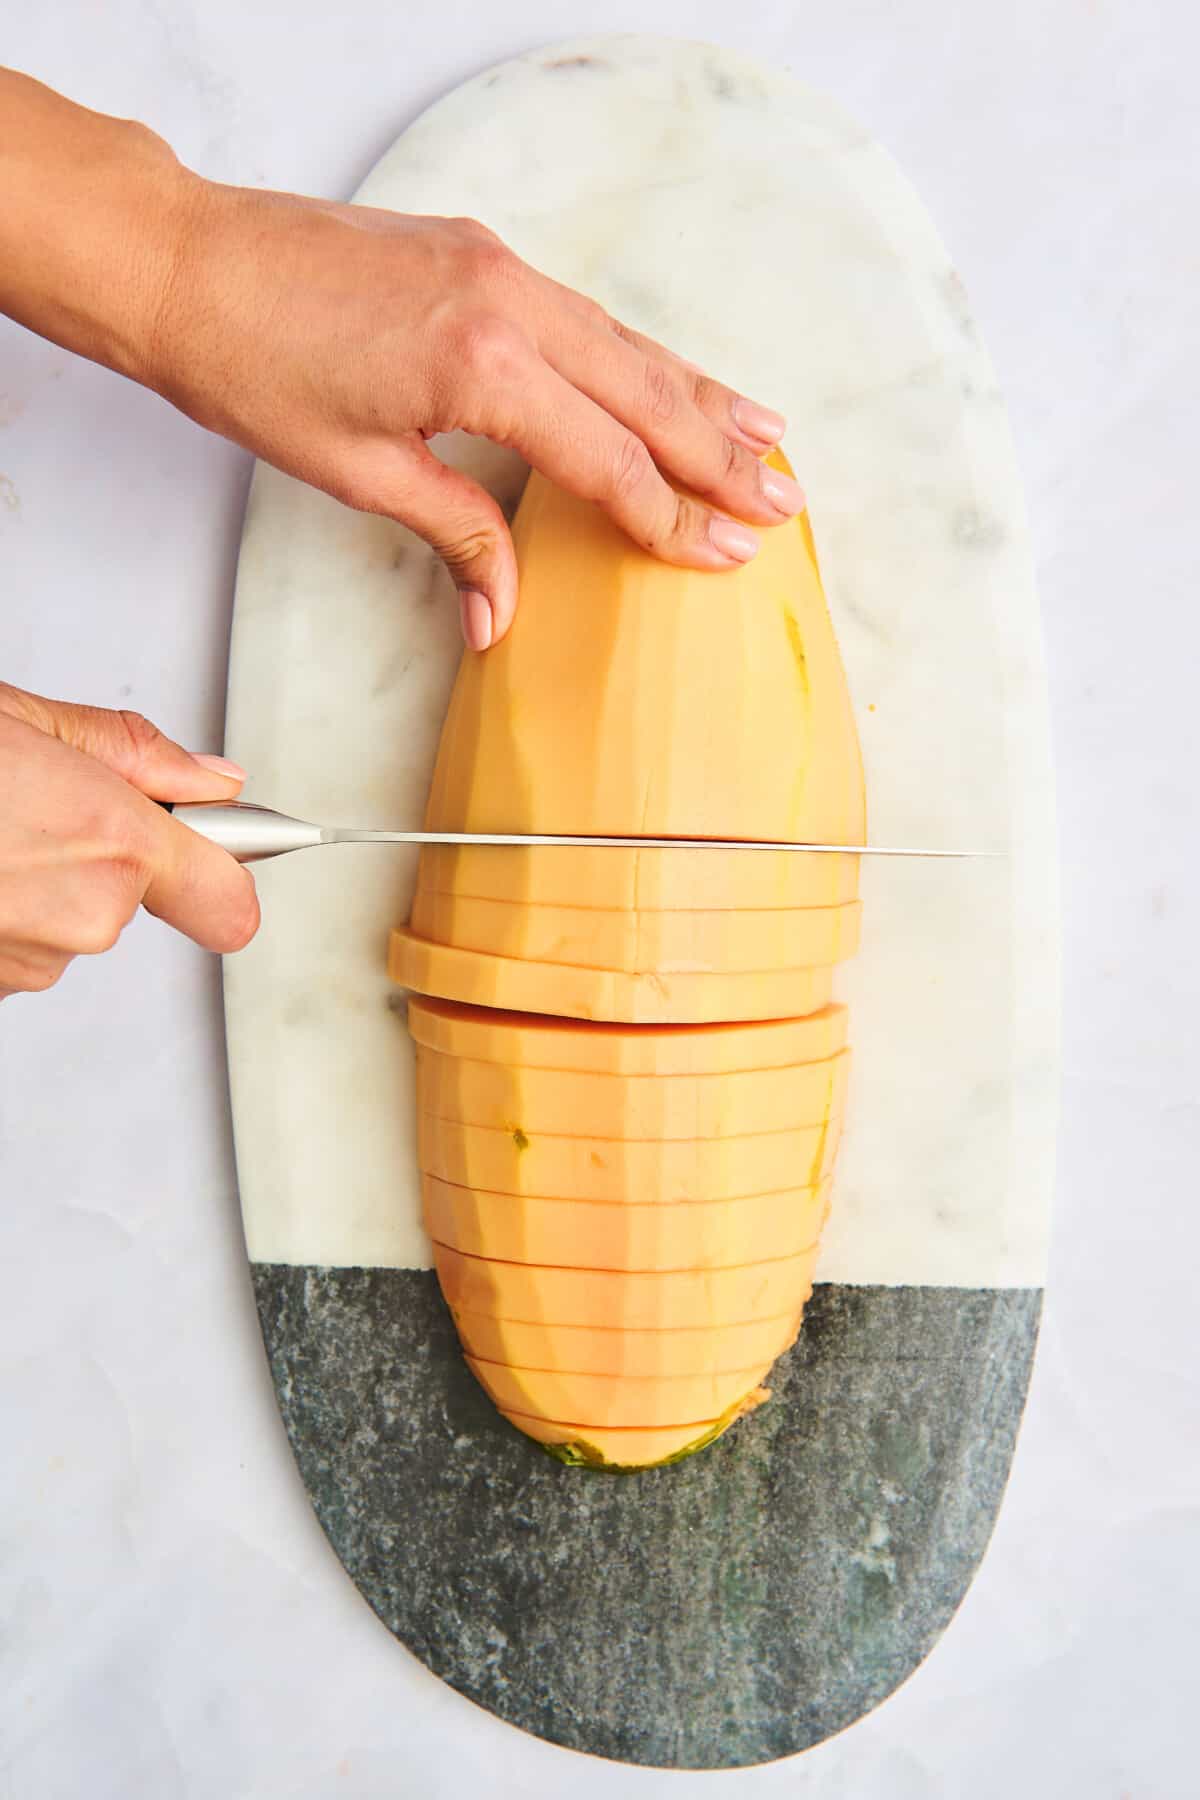 A hand slicing a papaya into half rings.